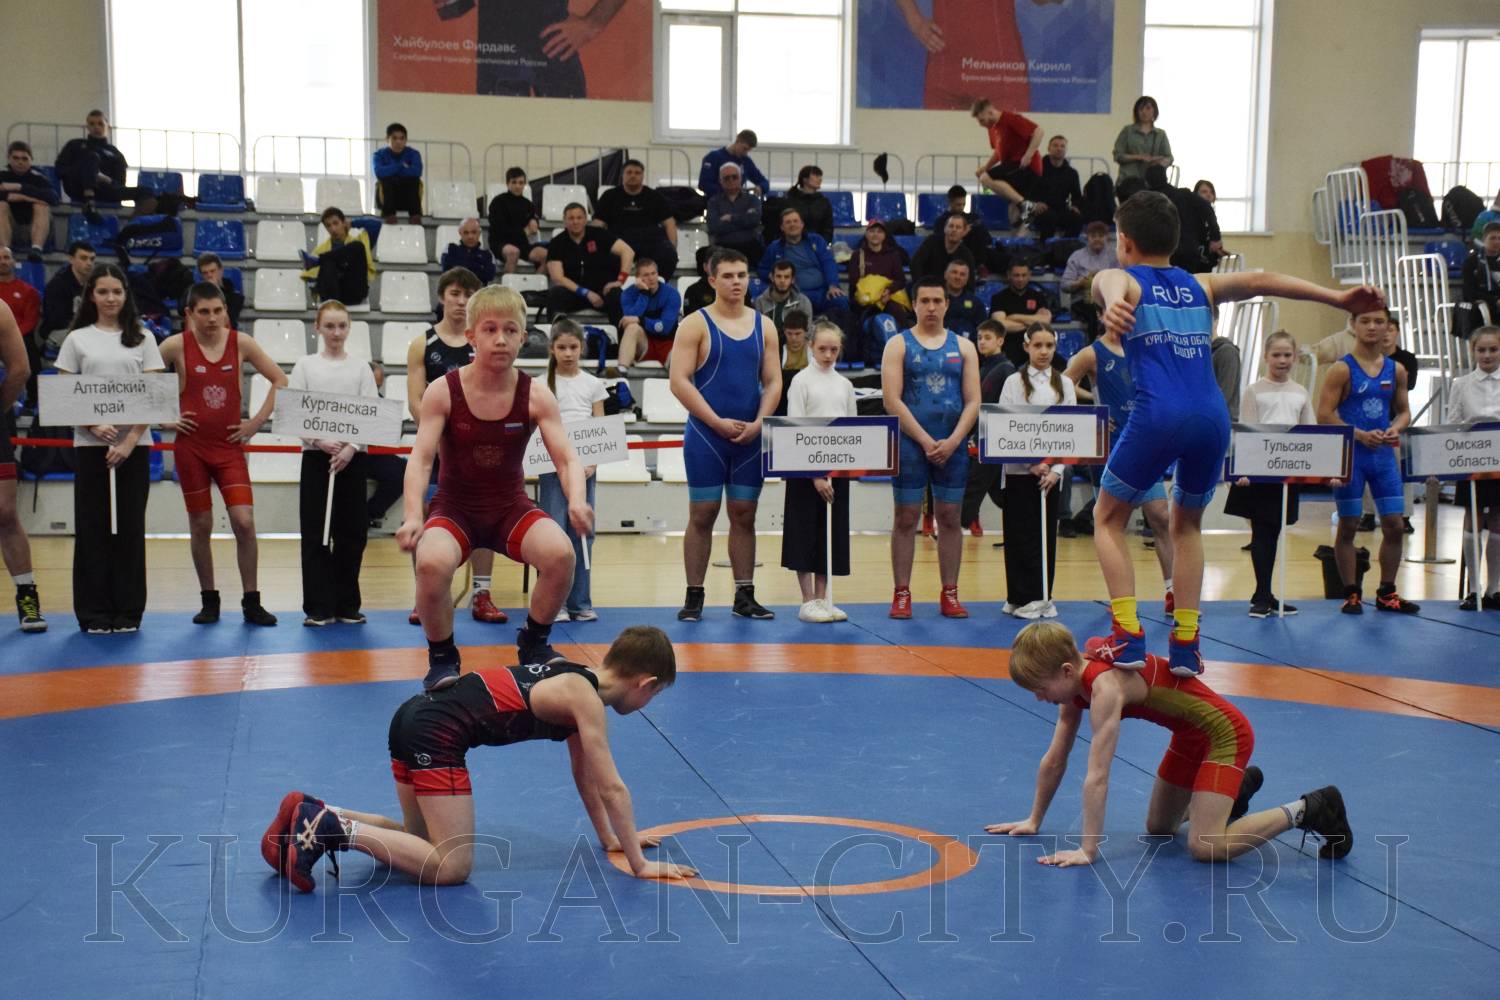 В Кургане проходит XIV Всероссийский турнир по греко-римской борьбе памяти Николая Васильевича Парышева.